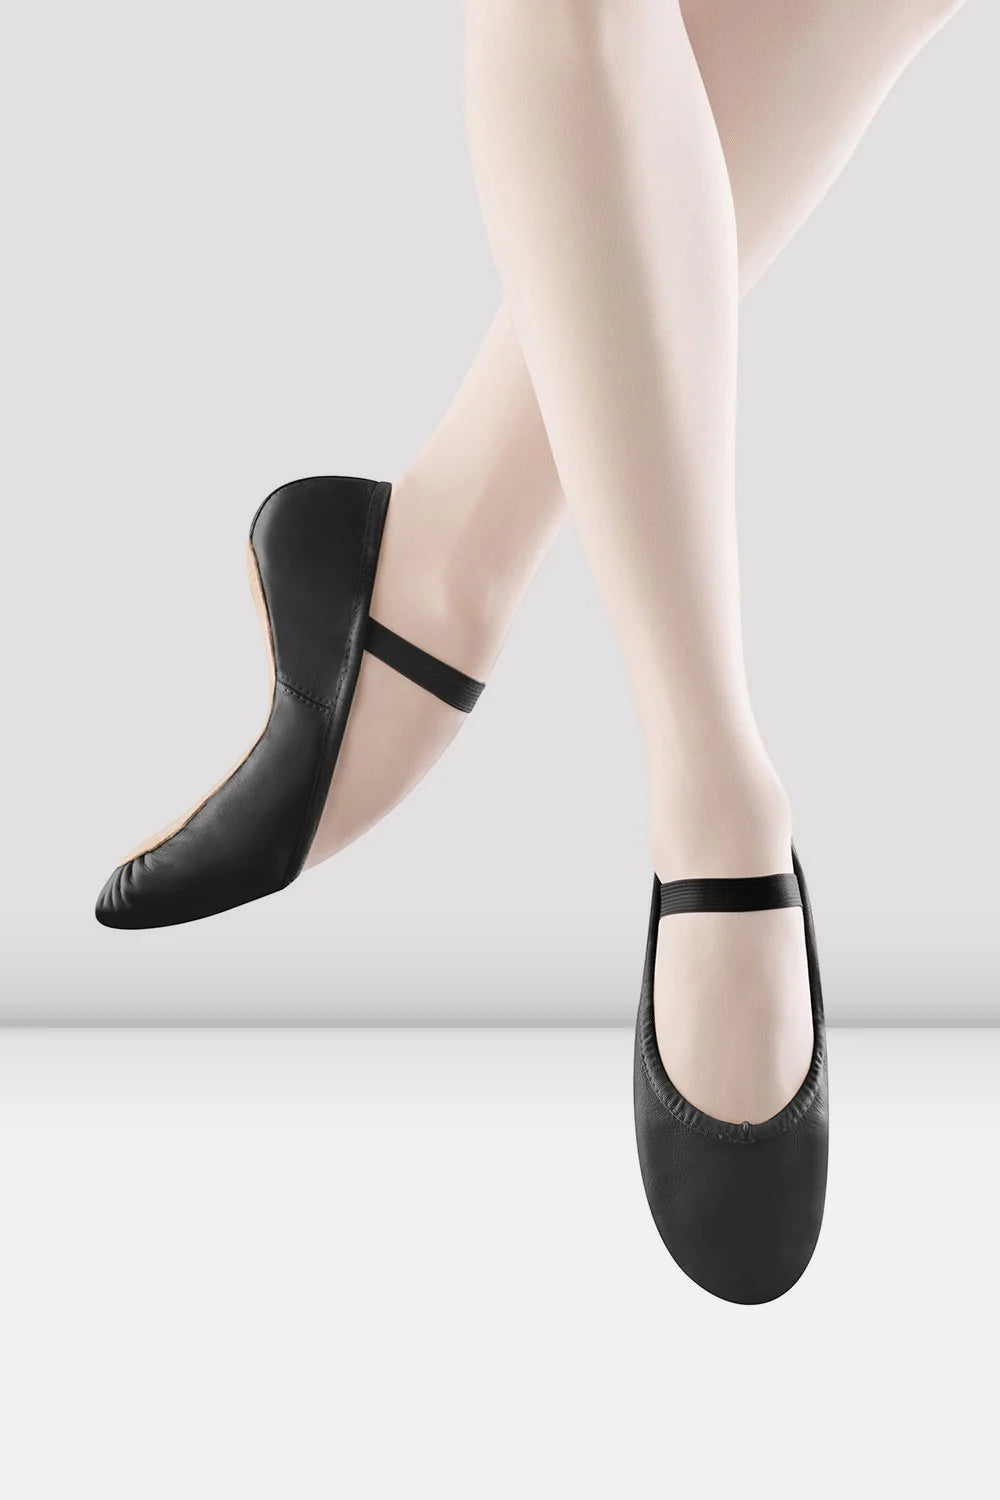 Bloch Dansoft Ballet Shoe